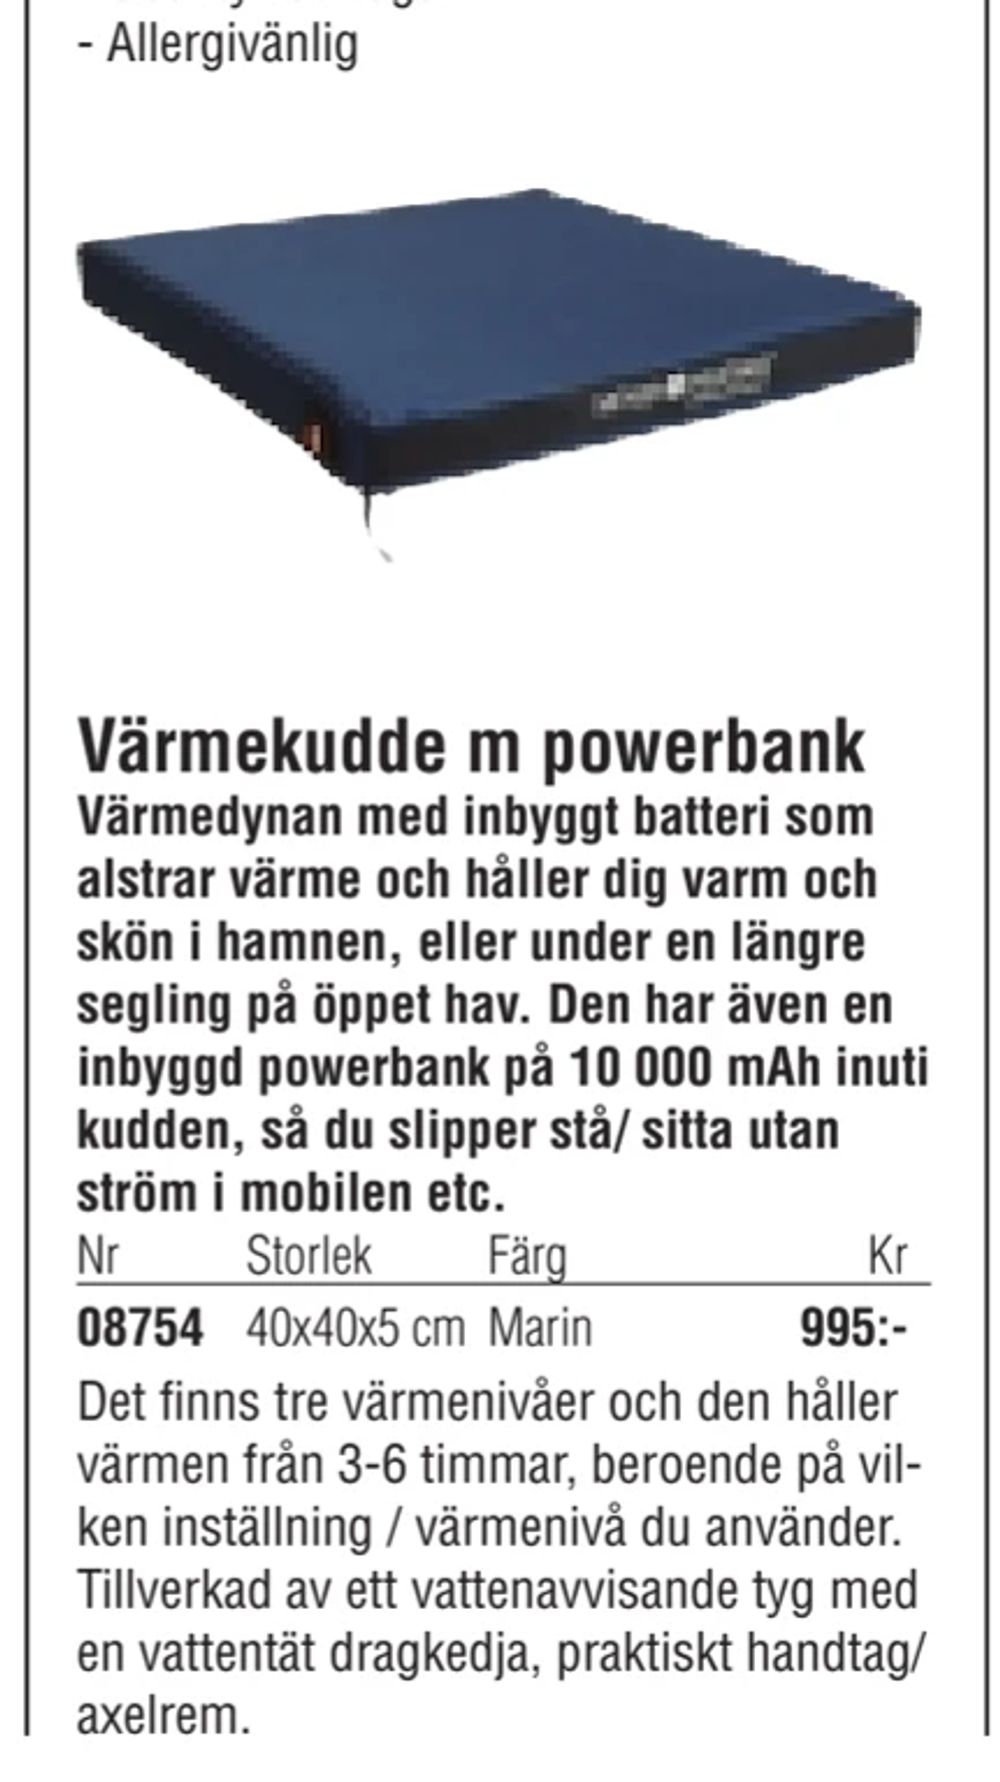 Erbjudanden på Värmekudde m powerbank från Erlandsons Brygga för 995 kr